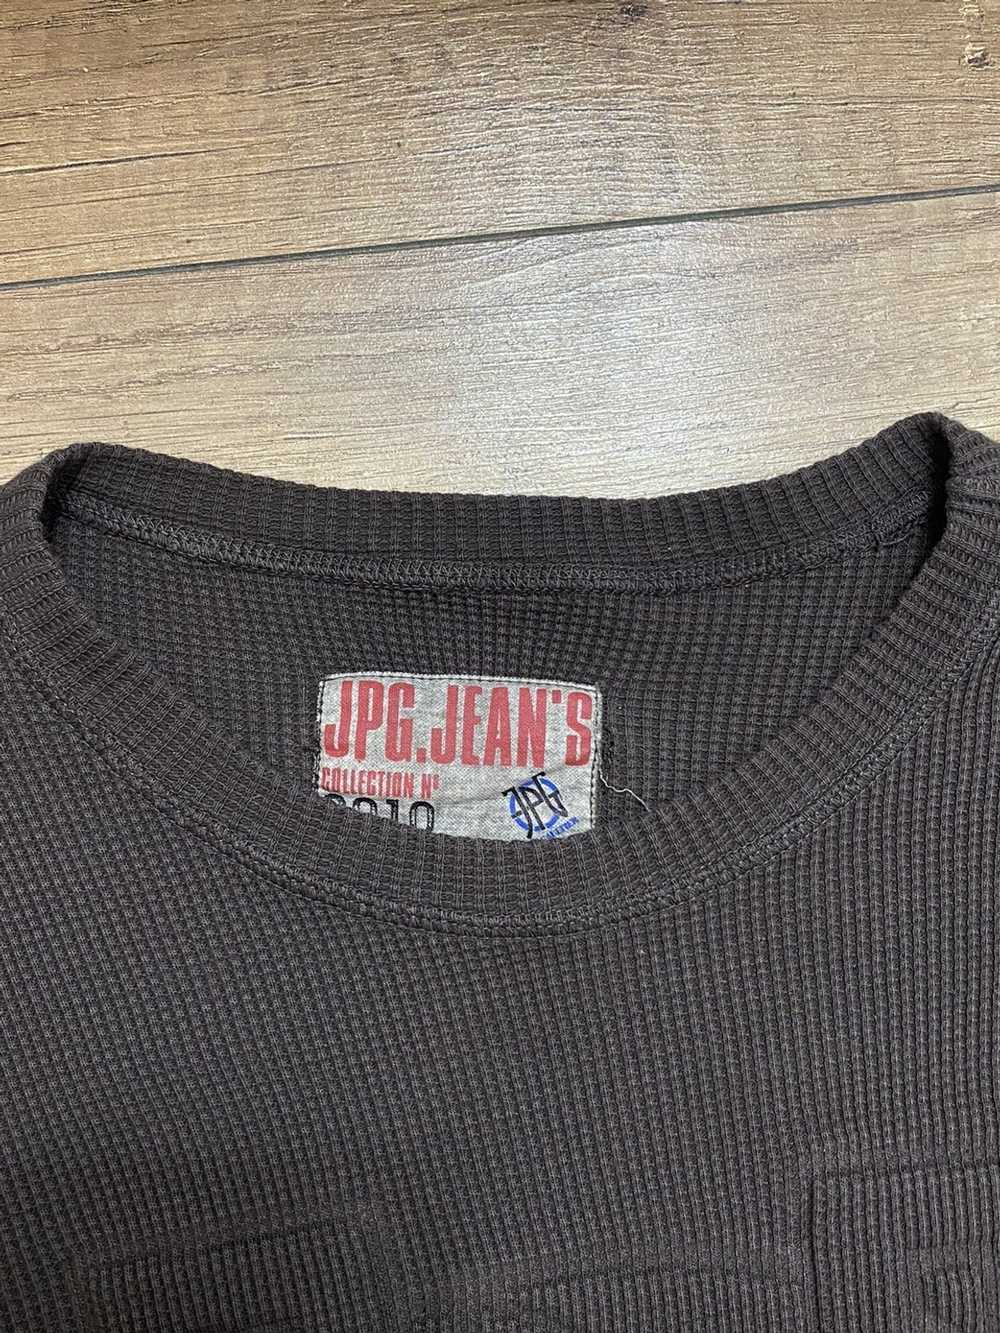 Jean Paul Gaultier JPG Men’s Knit Sweater - image 5